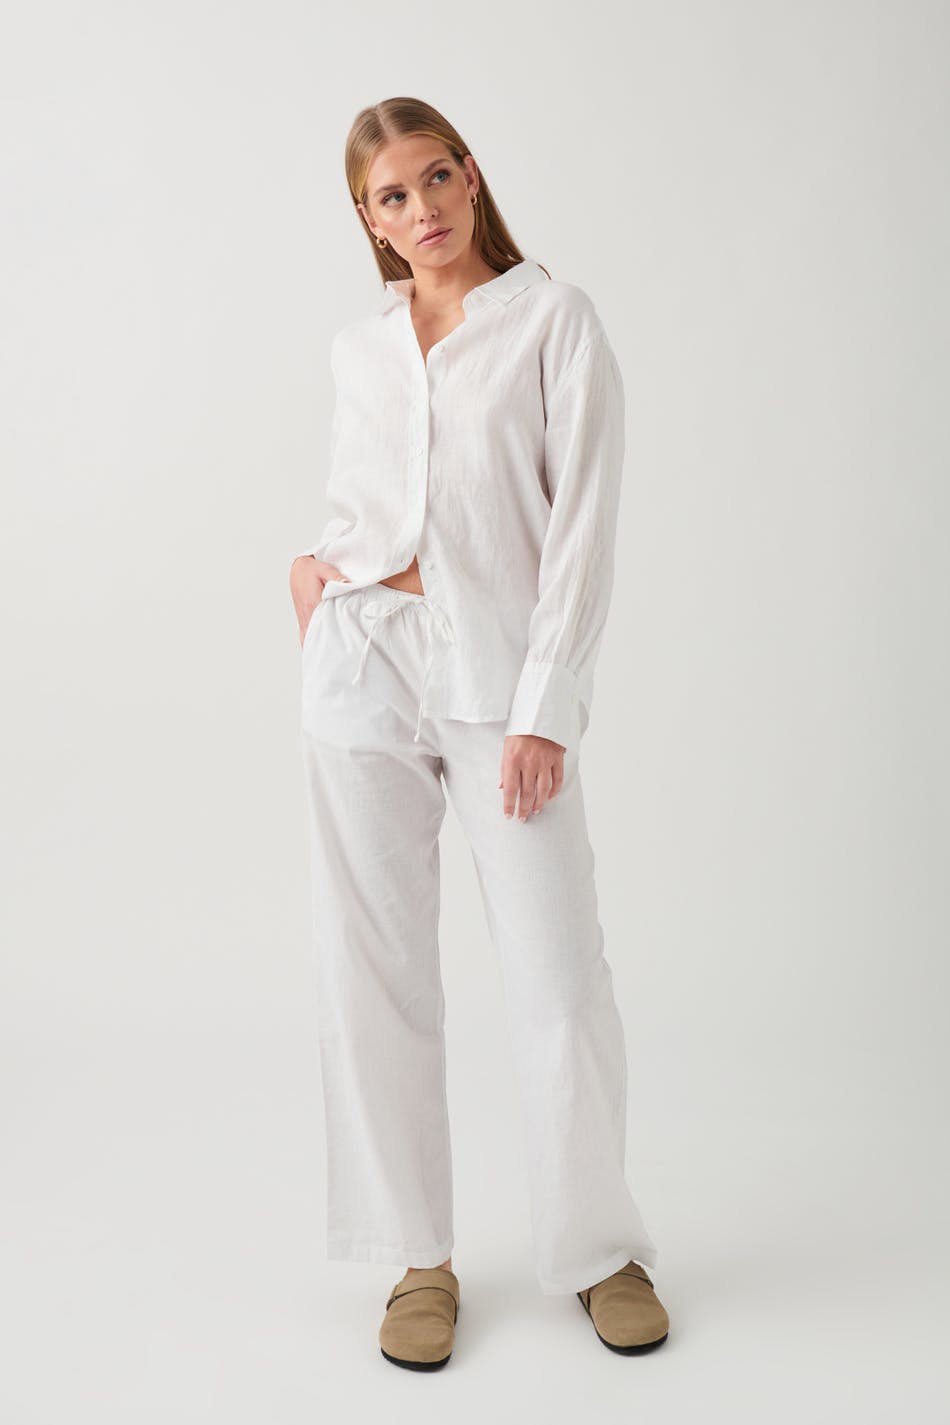 Gina Tricot - Linen blend trousers - hørbukser- White - S - Female